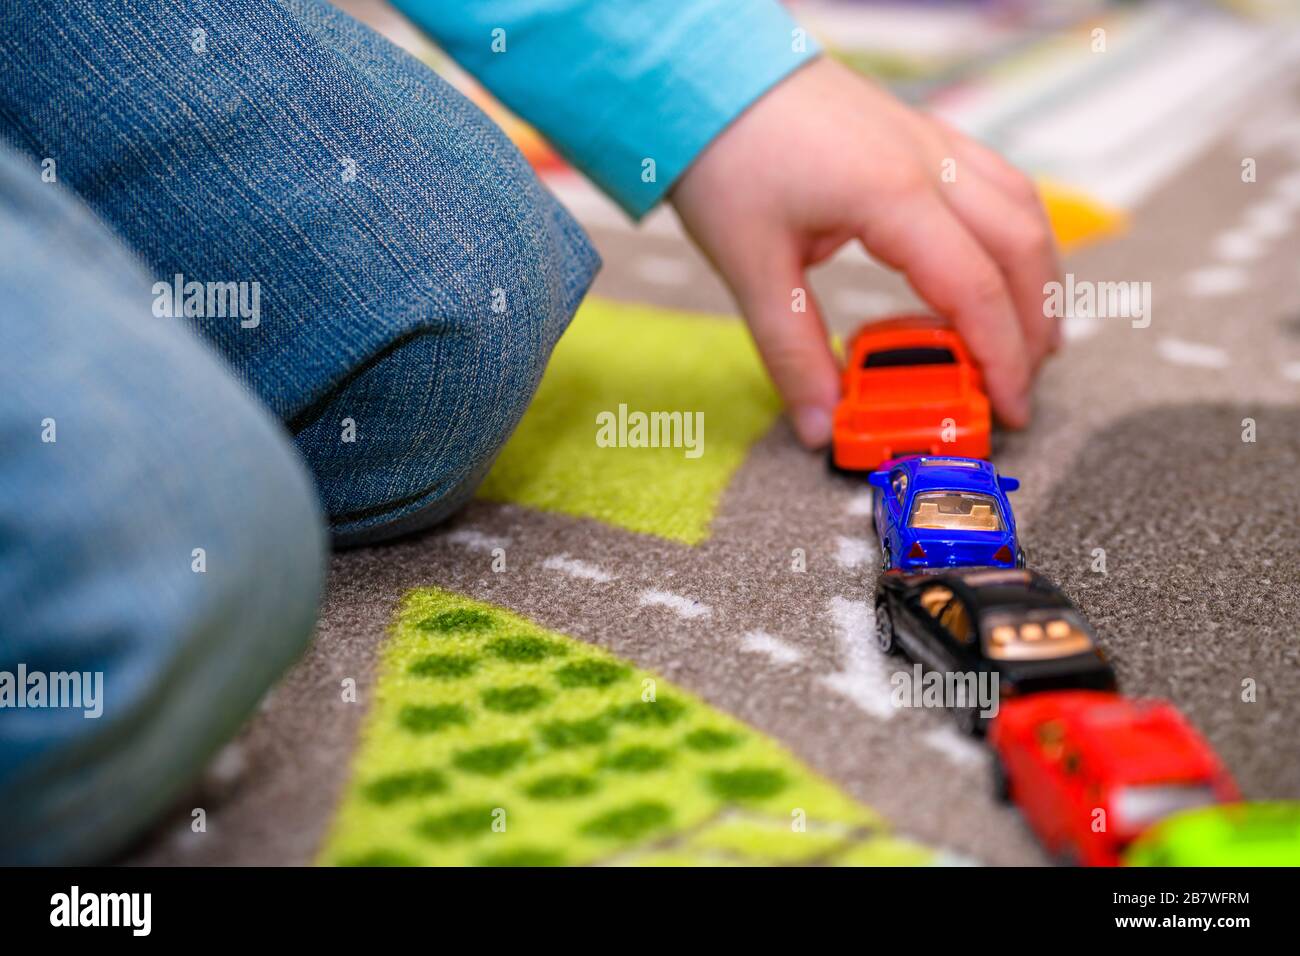 Primo piano di un ragazzo di cinque anni che gioca e allineano le auto giocattolo su un tappetino da gioco con le strade. Il ragazzo è vestito di jeans blu e tiene una macchina giocattolo rossa. Foto Stock